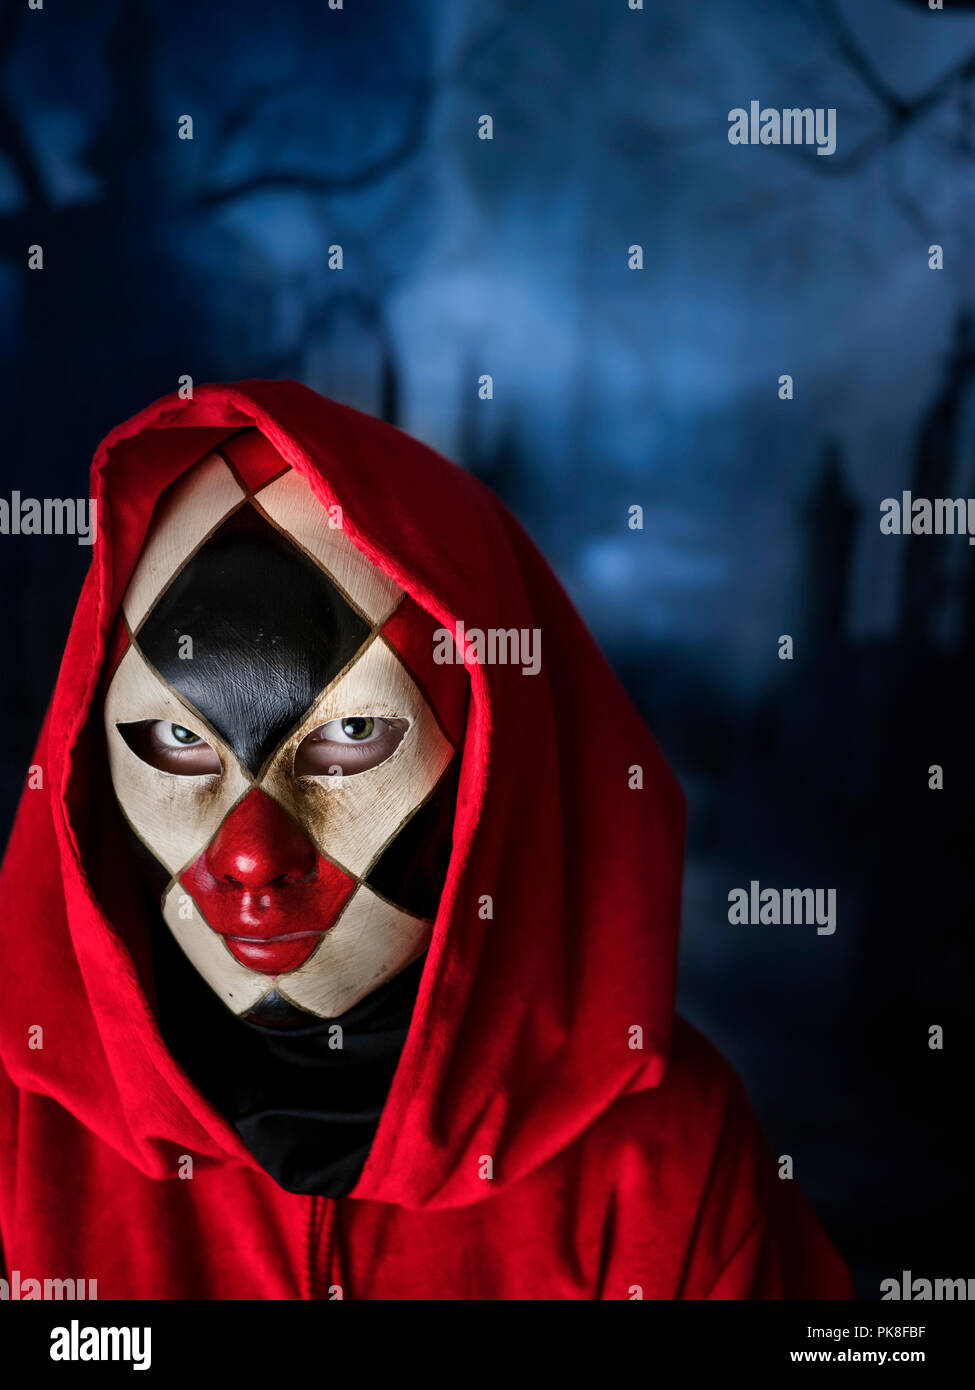 Donna mascherata in un cimitero scuro, veneziana verificato piena maschera blu scuro notte di Halloween di carnevale Foto Stock